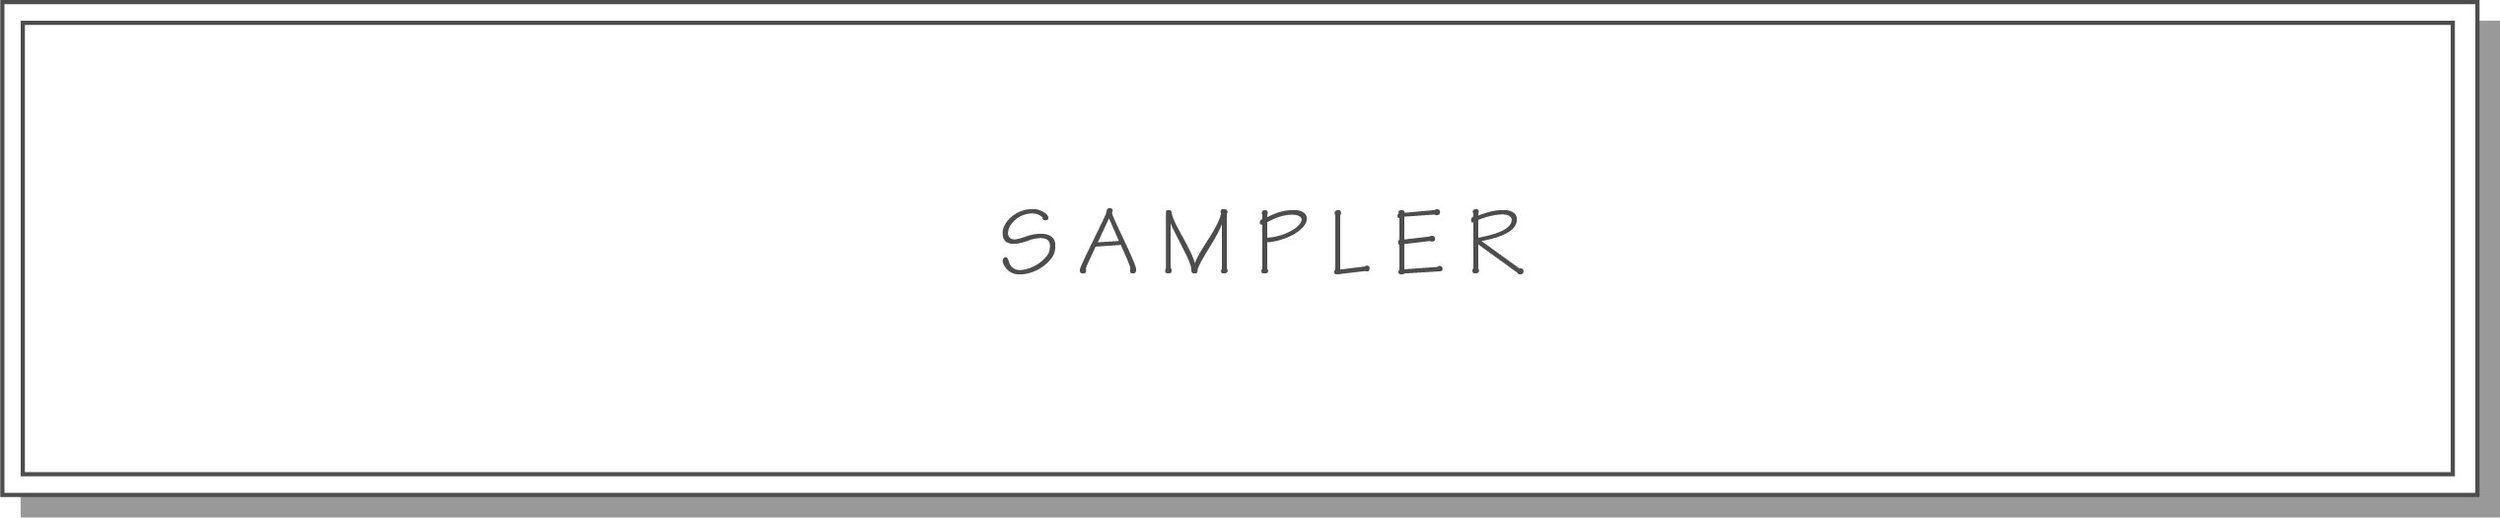 sampler button.jpg